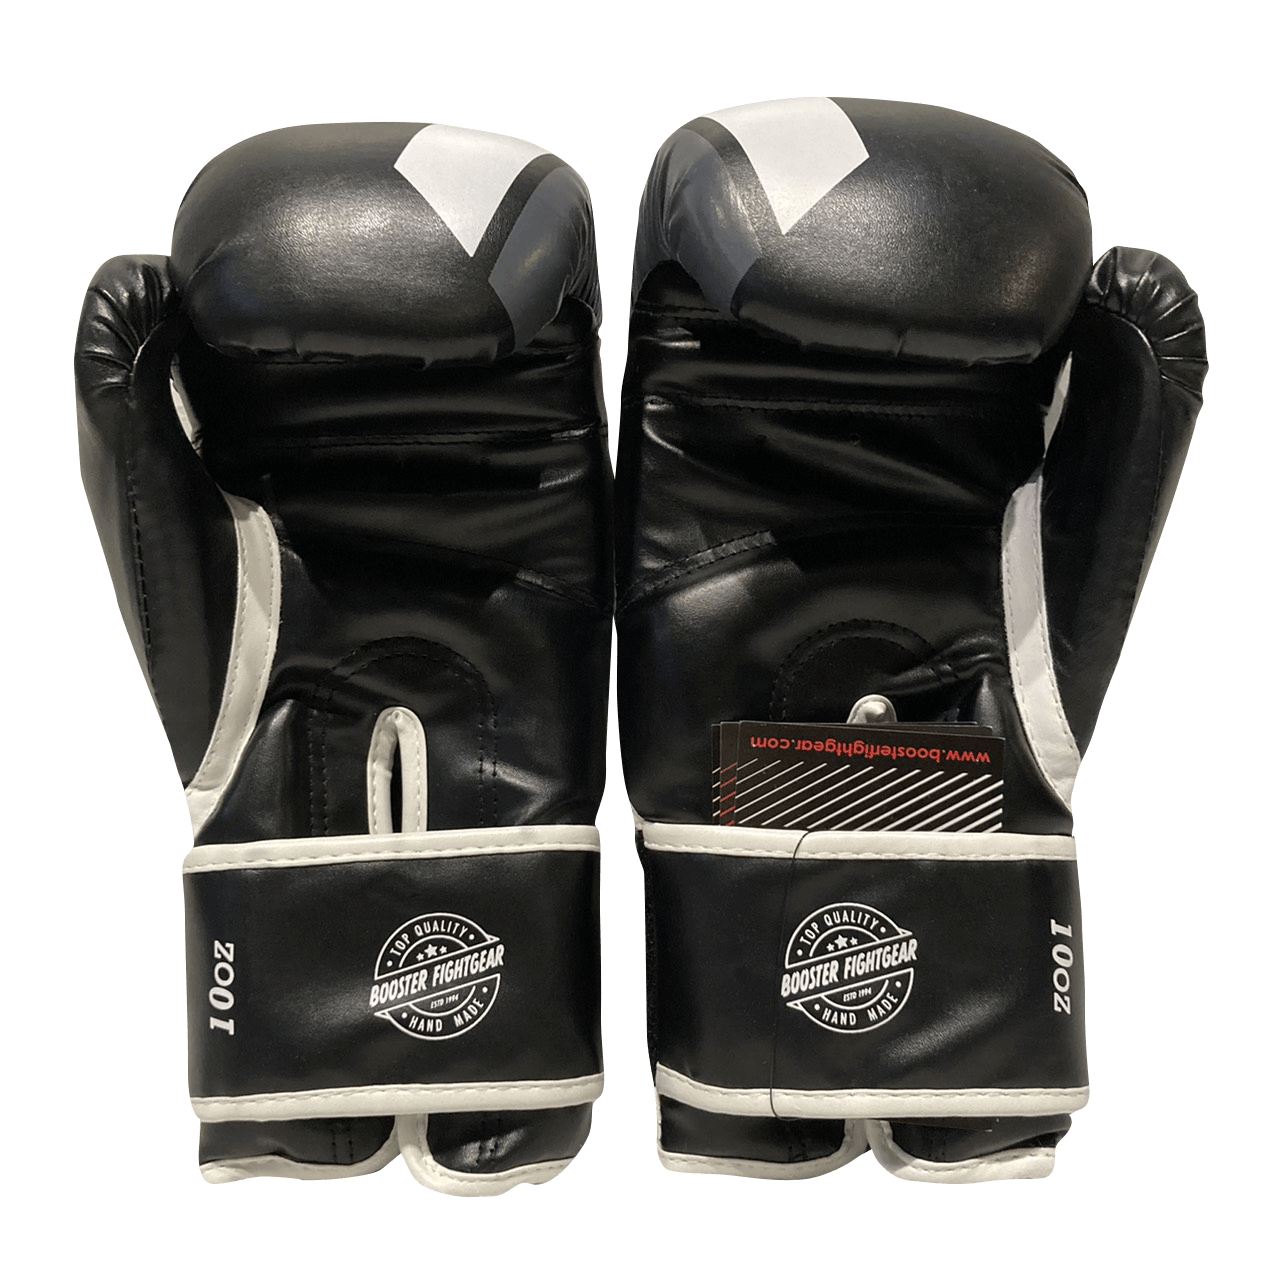 Booster Boxing Gloves BT sparring V2 White Grey - SUPER EXPORT SHOP